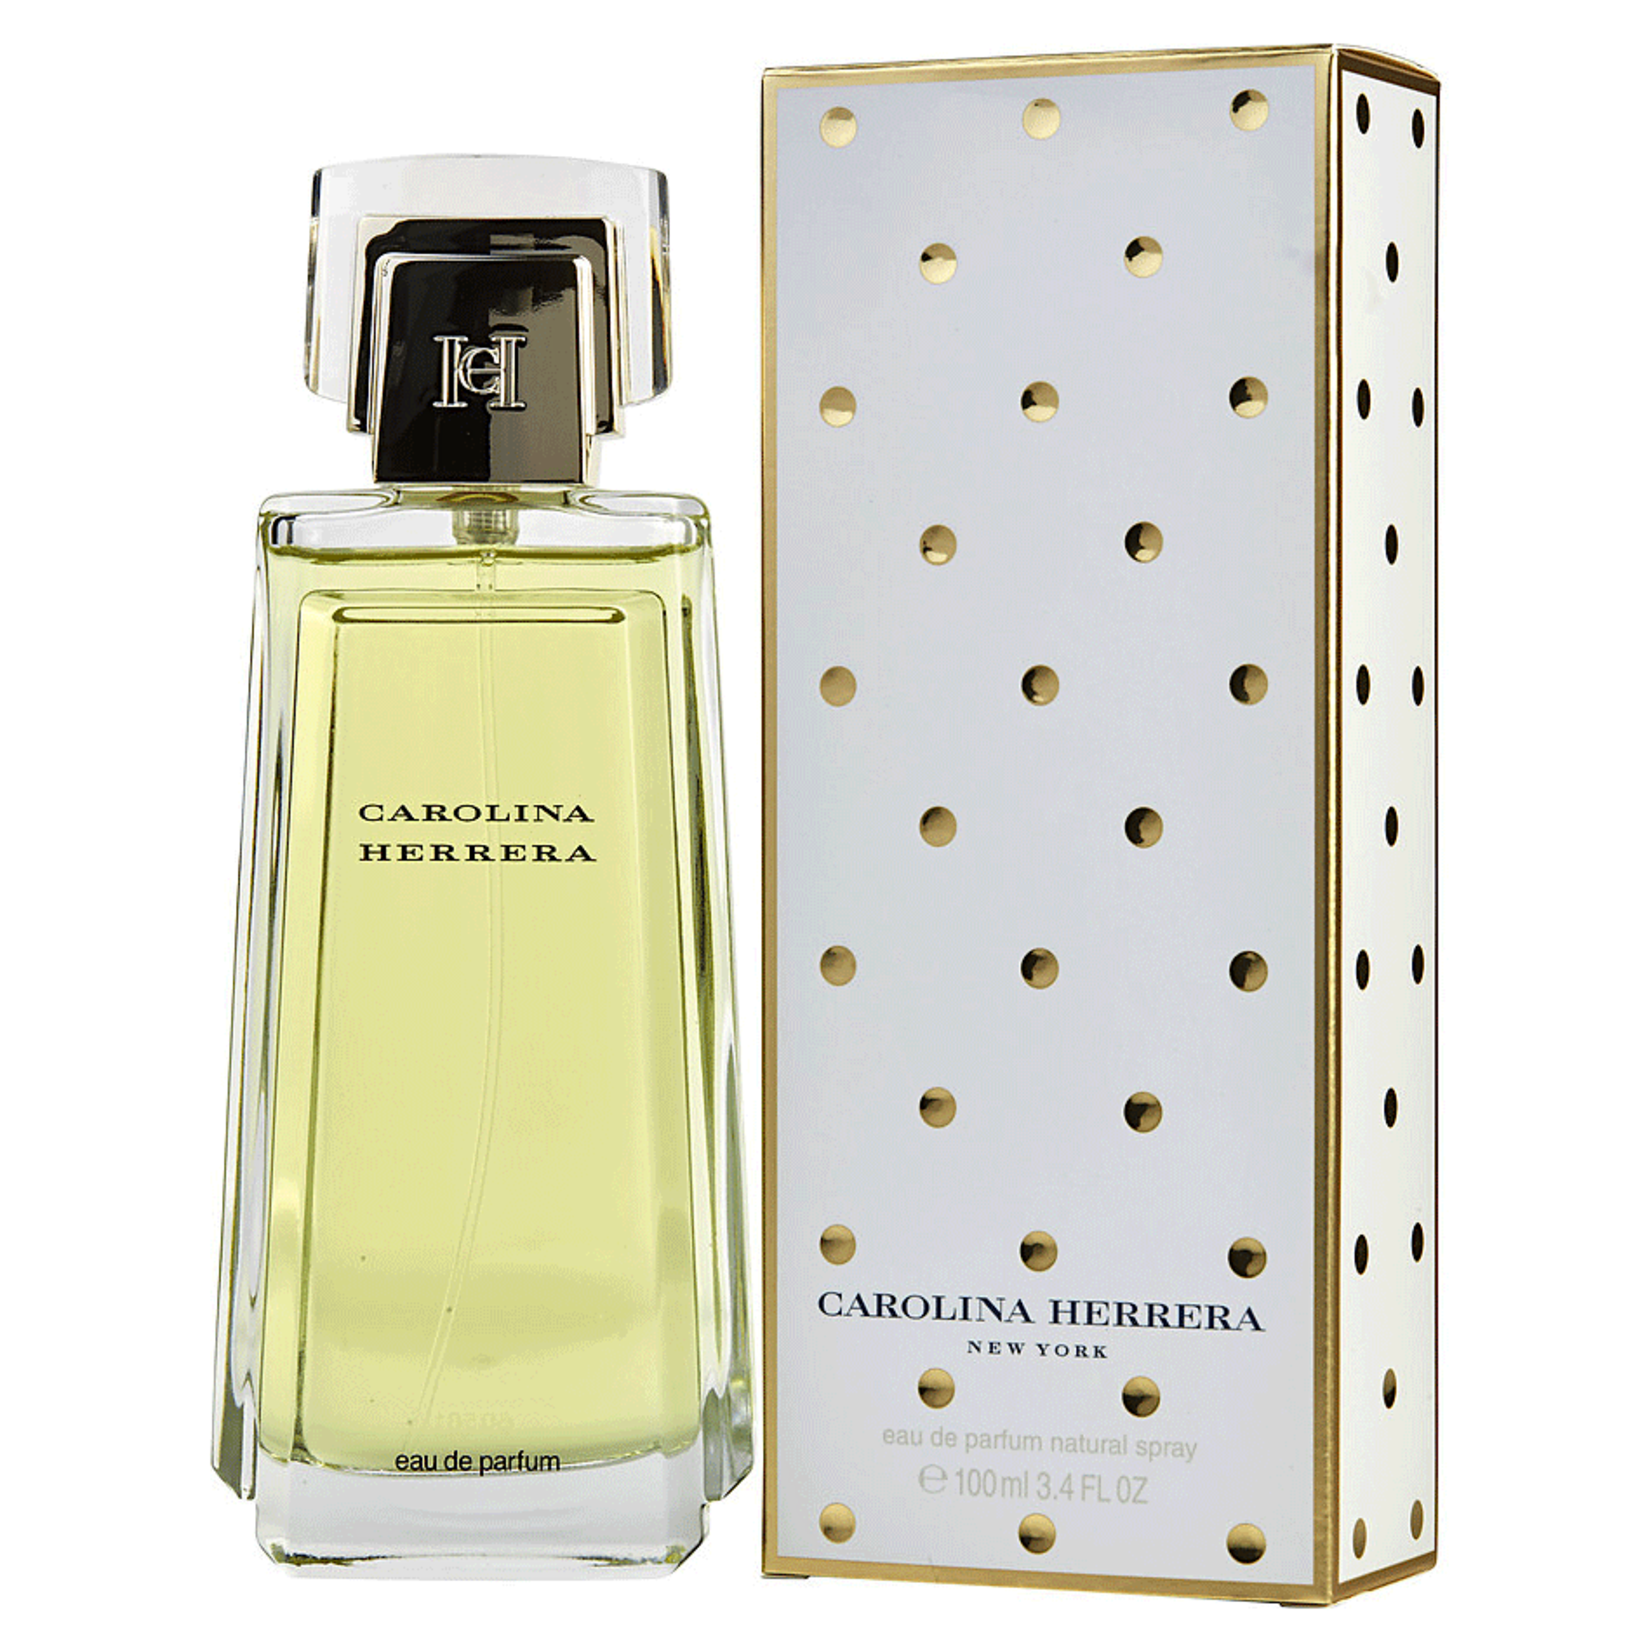 Carolina Herrera Carolina Herrera Eau de Parfum Classic for Women